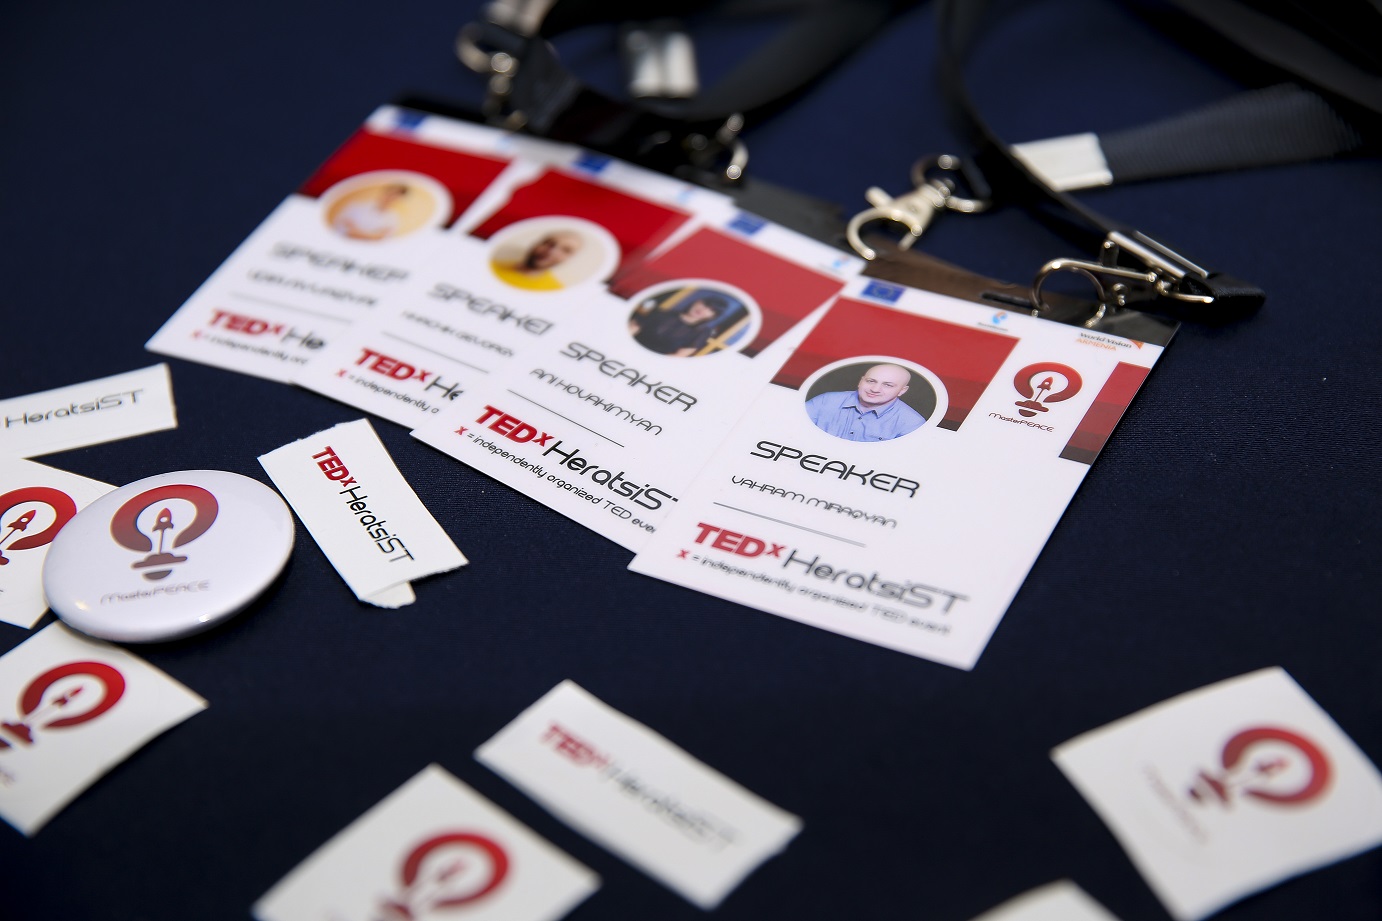 Ռոստելեկոմի աջակցությամբ կայացավ TEDxHeratsiSt միջոցառումը